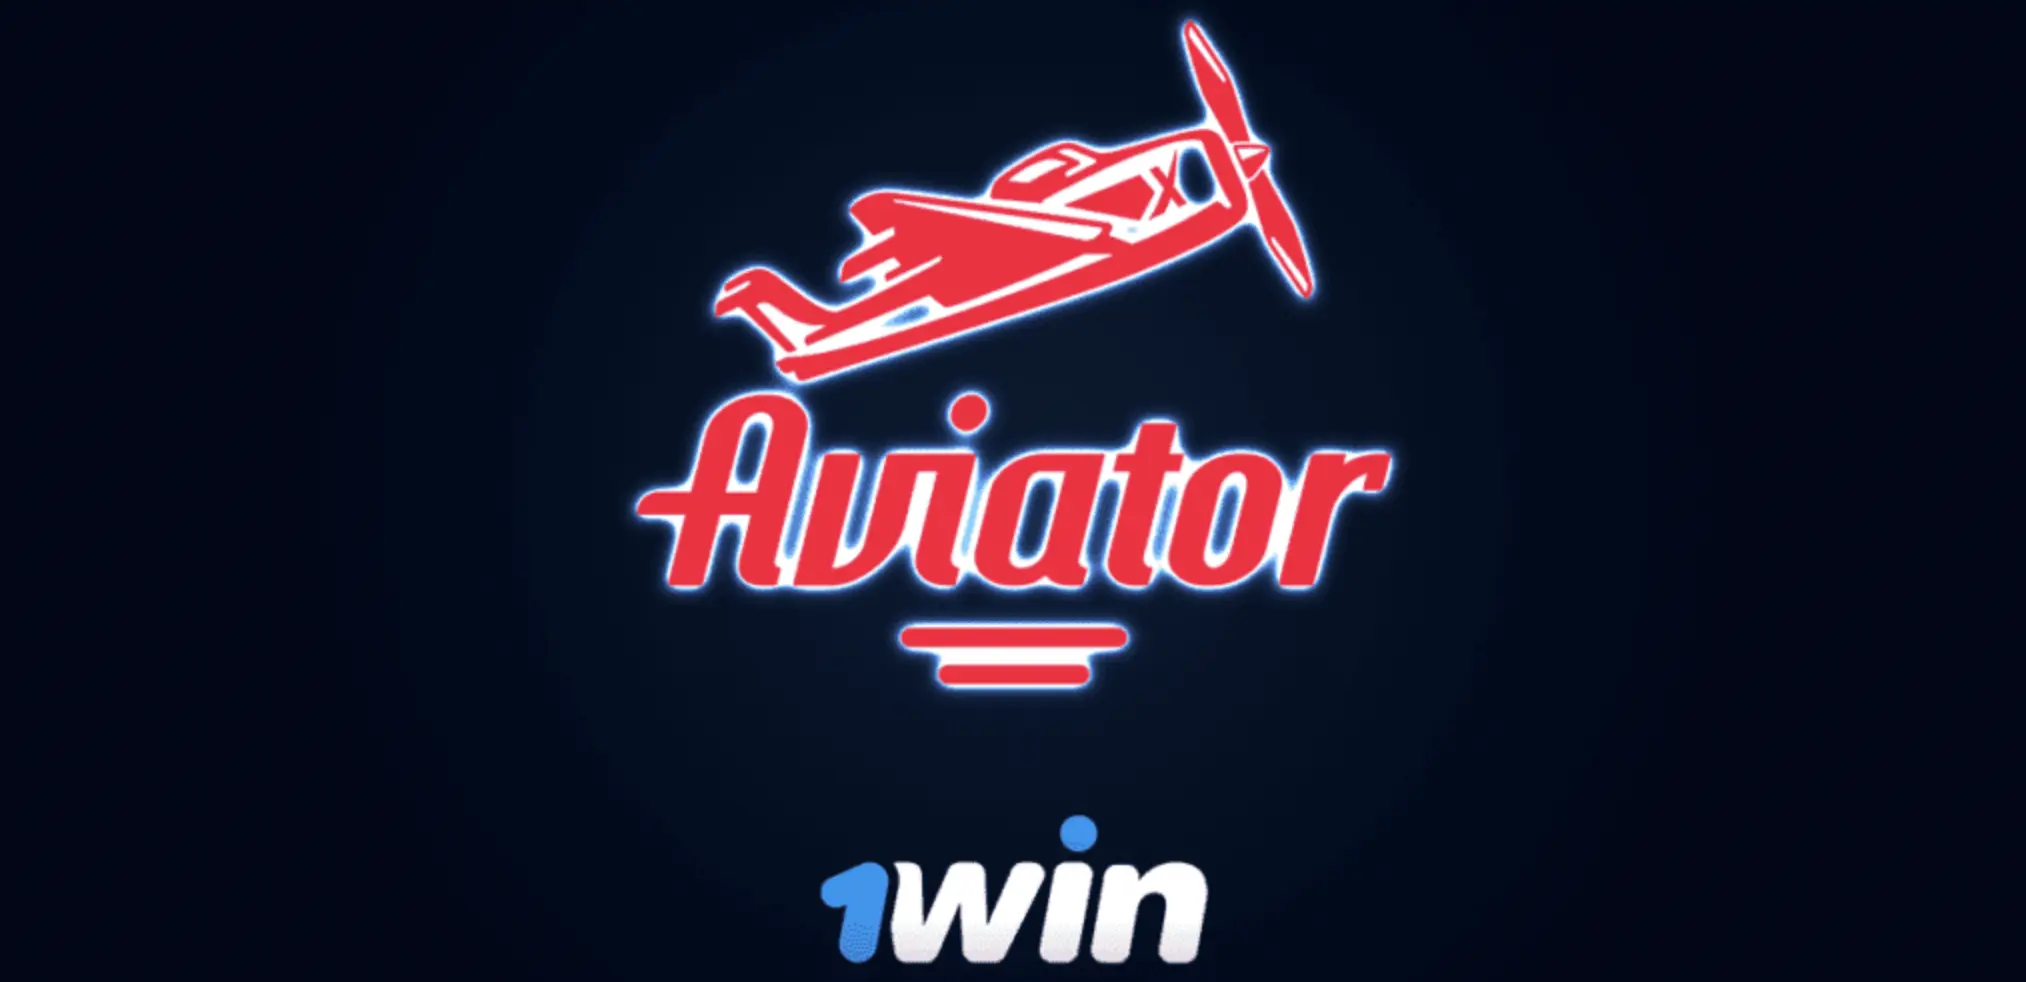 Авиатор 1 win aviator1win